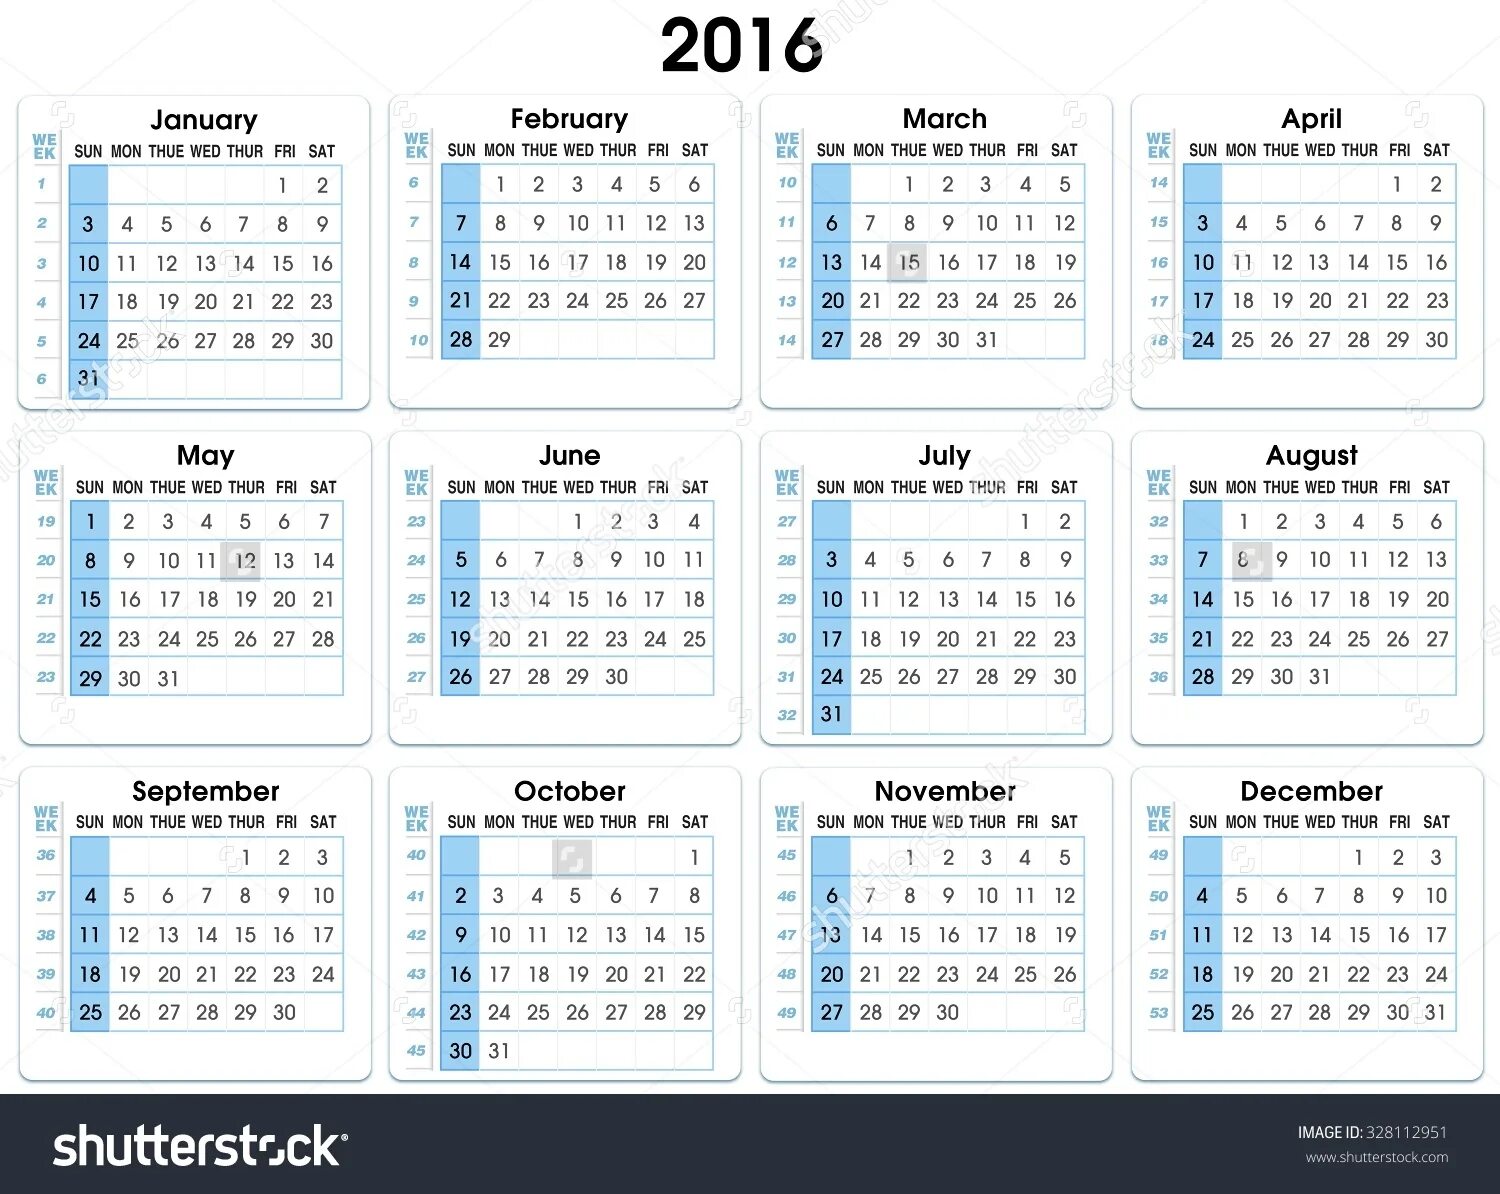 Получить номер недели. 2016 Год календарь с неделями. Календарь 2016 года с номерами недель. Номера недель в 2016. Календарь с нумерацией недель.